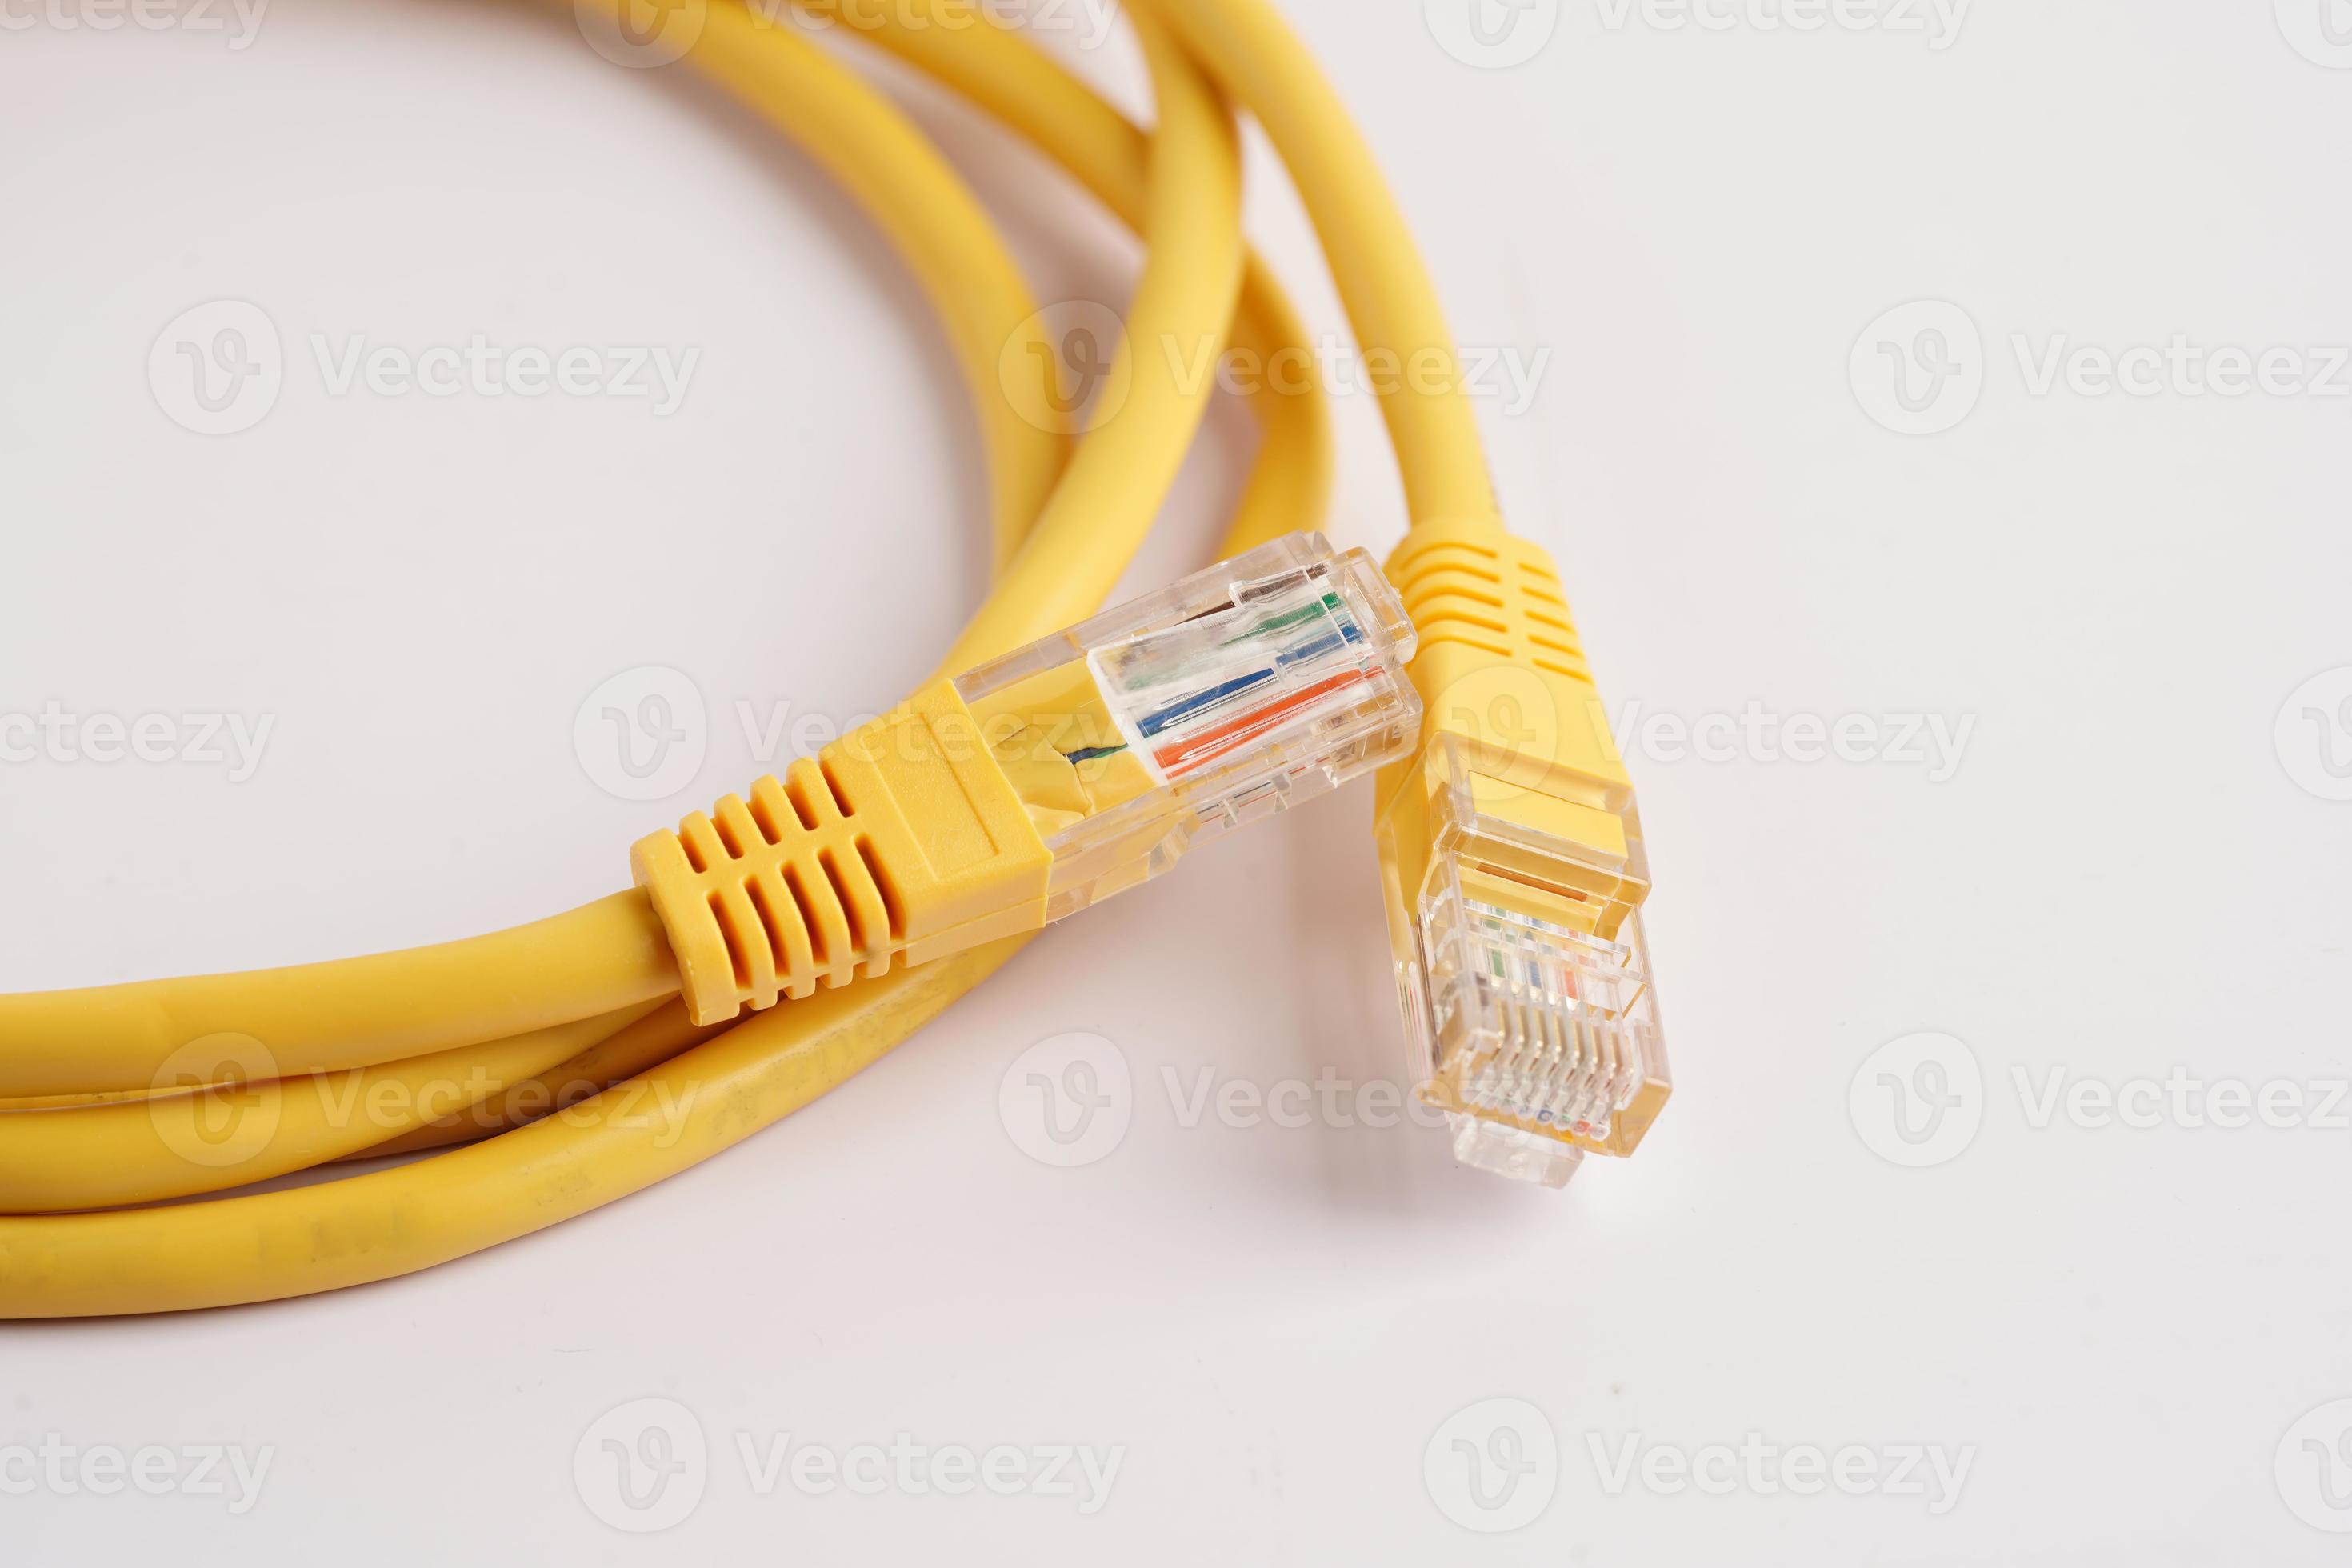 red de conexión a internet por cable lan, cable ethernet con conector rj45.  16803216 Foto de stock en Vecteezy